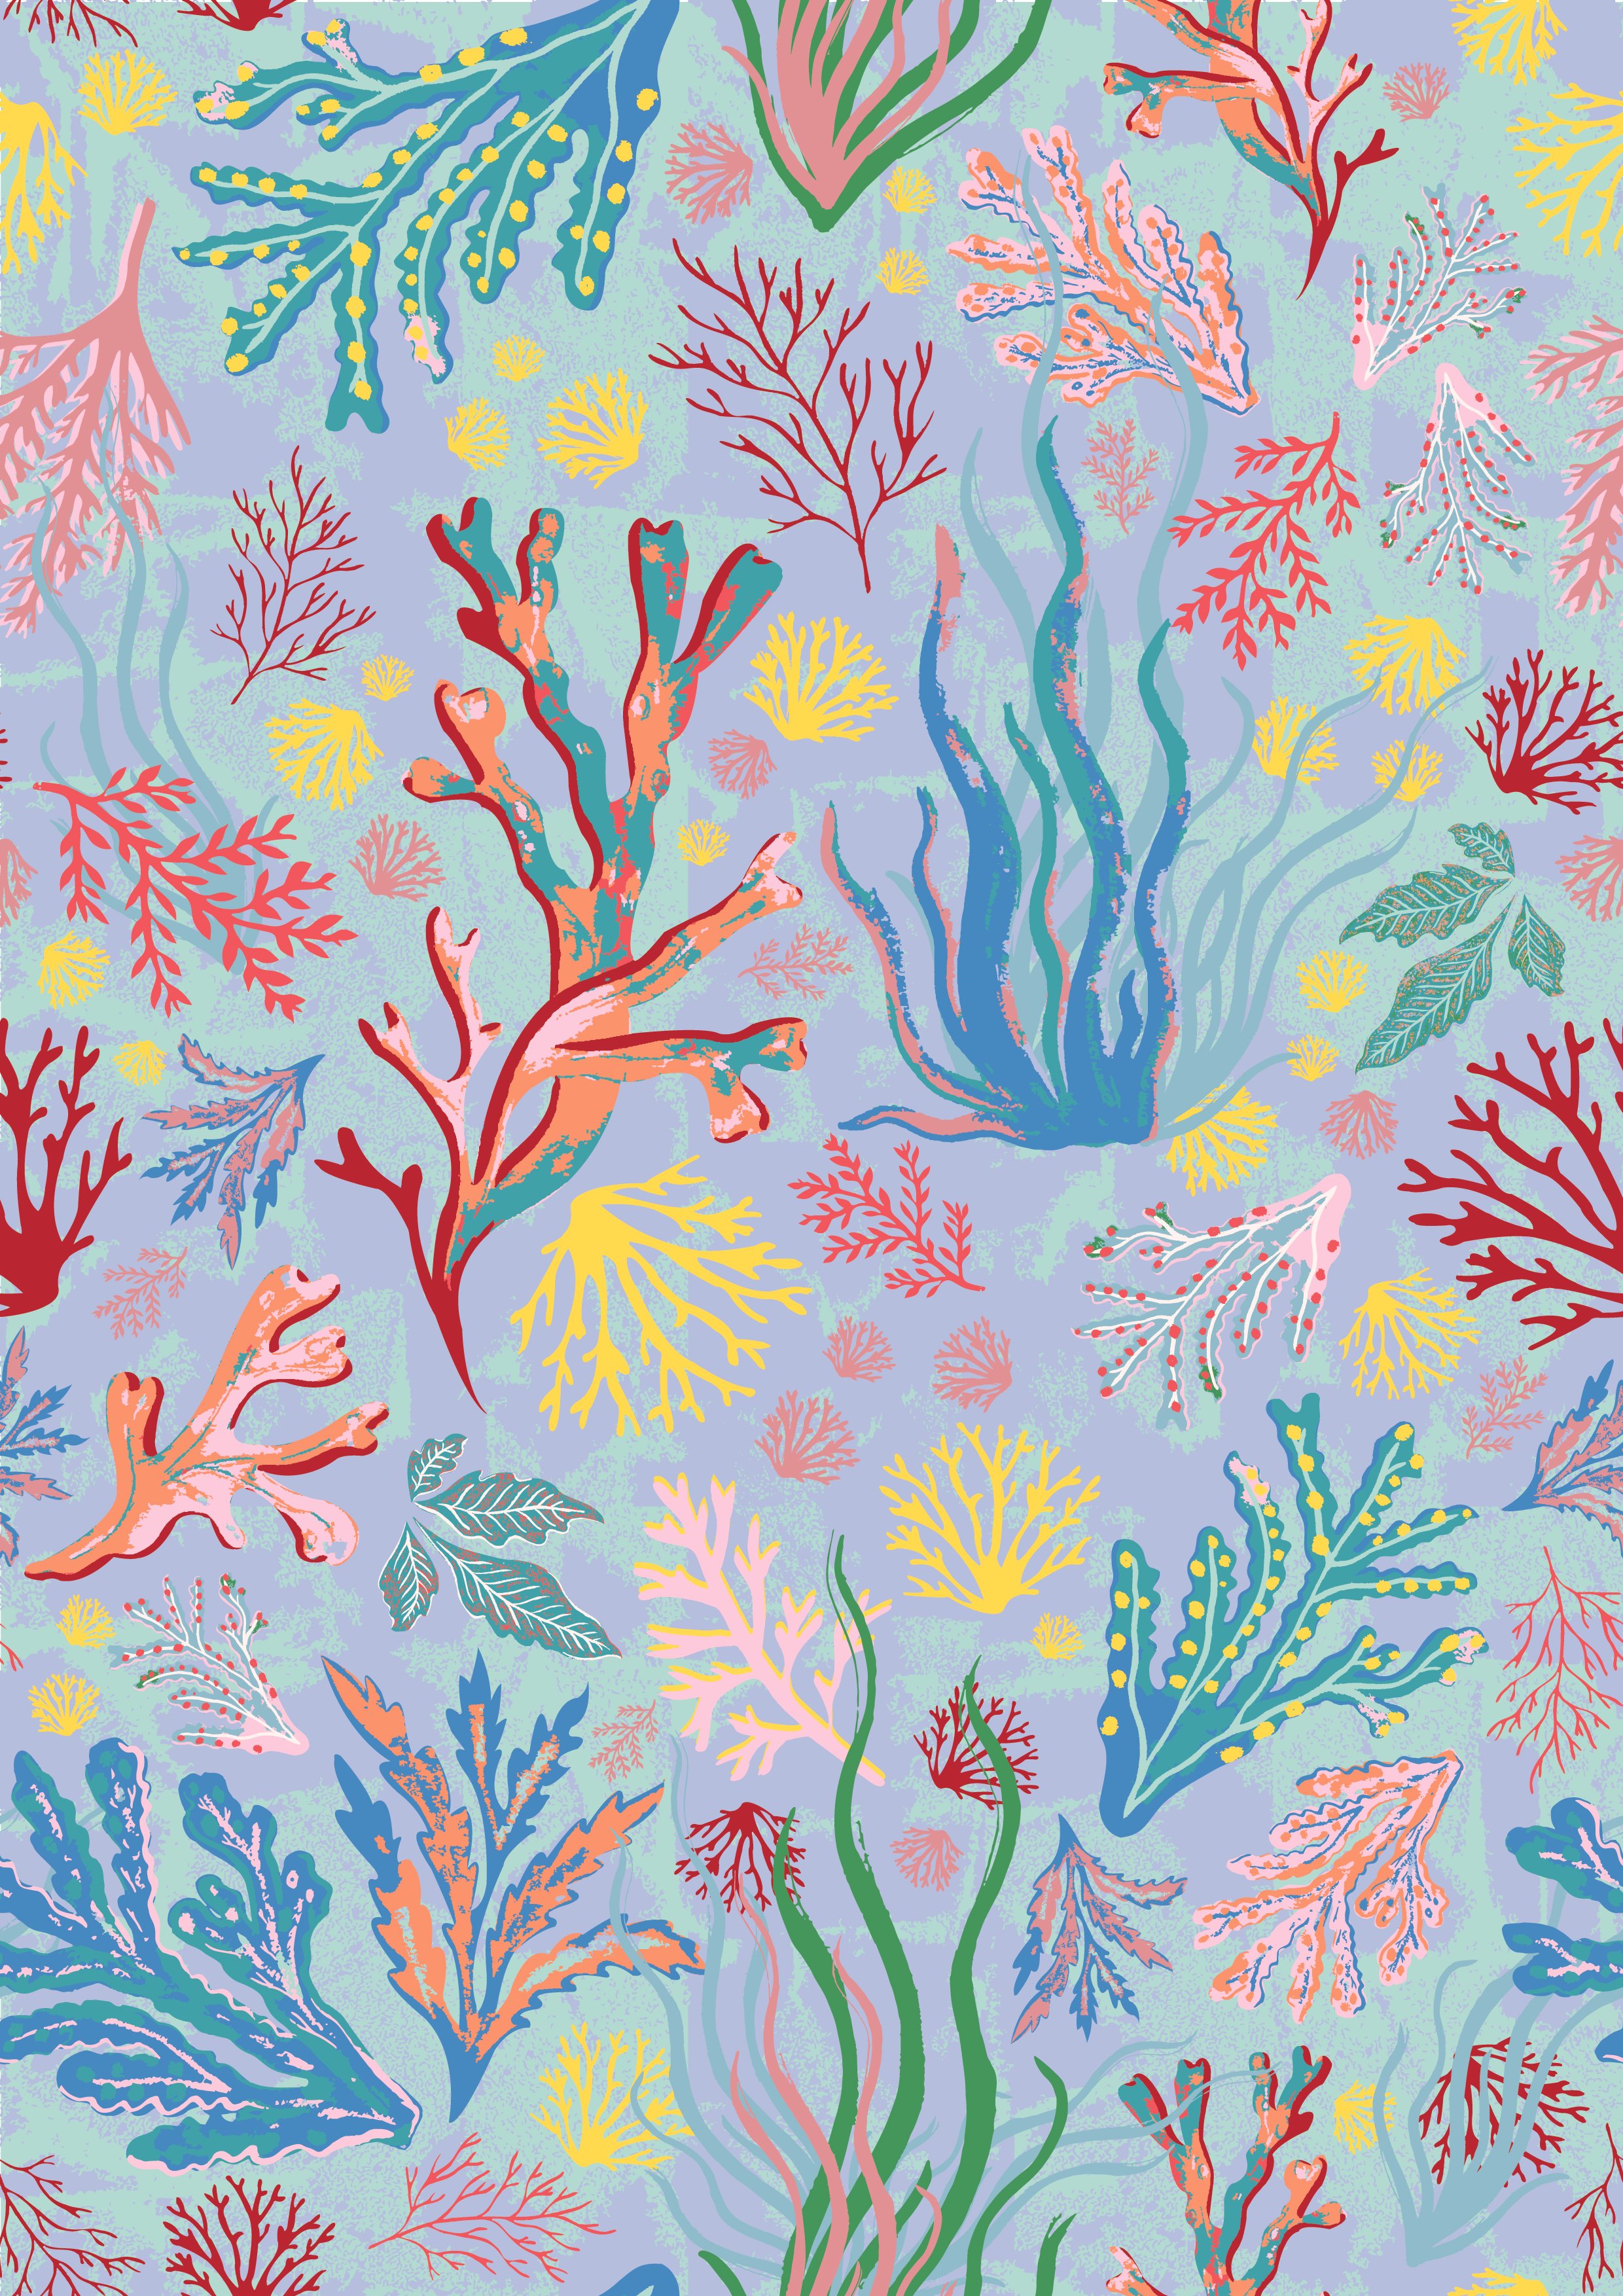 Seaweed pattern.jpg